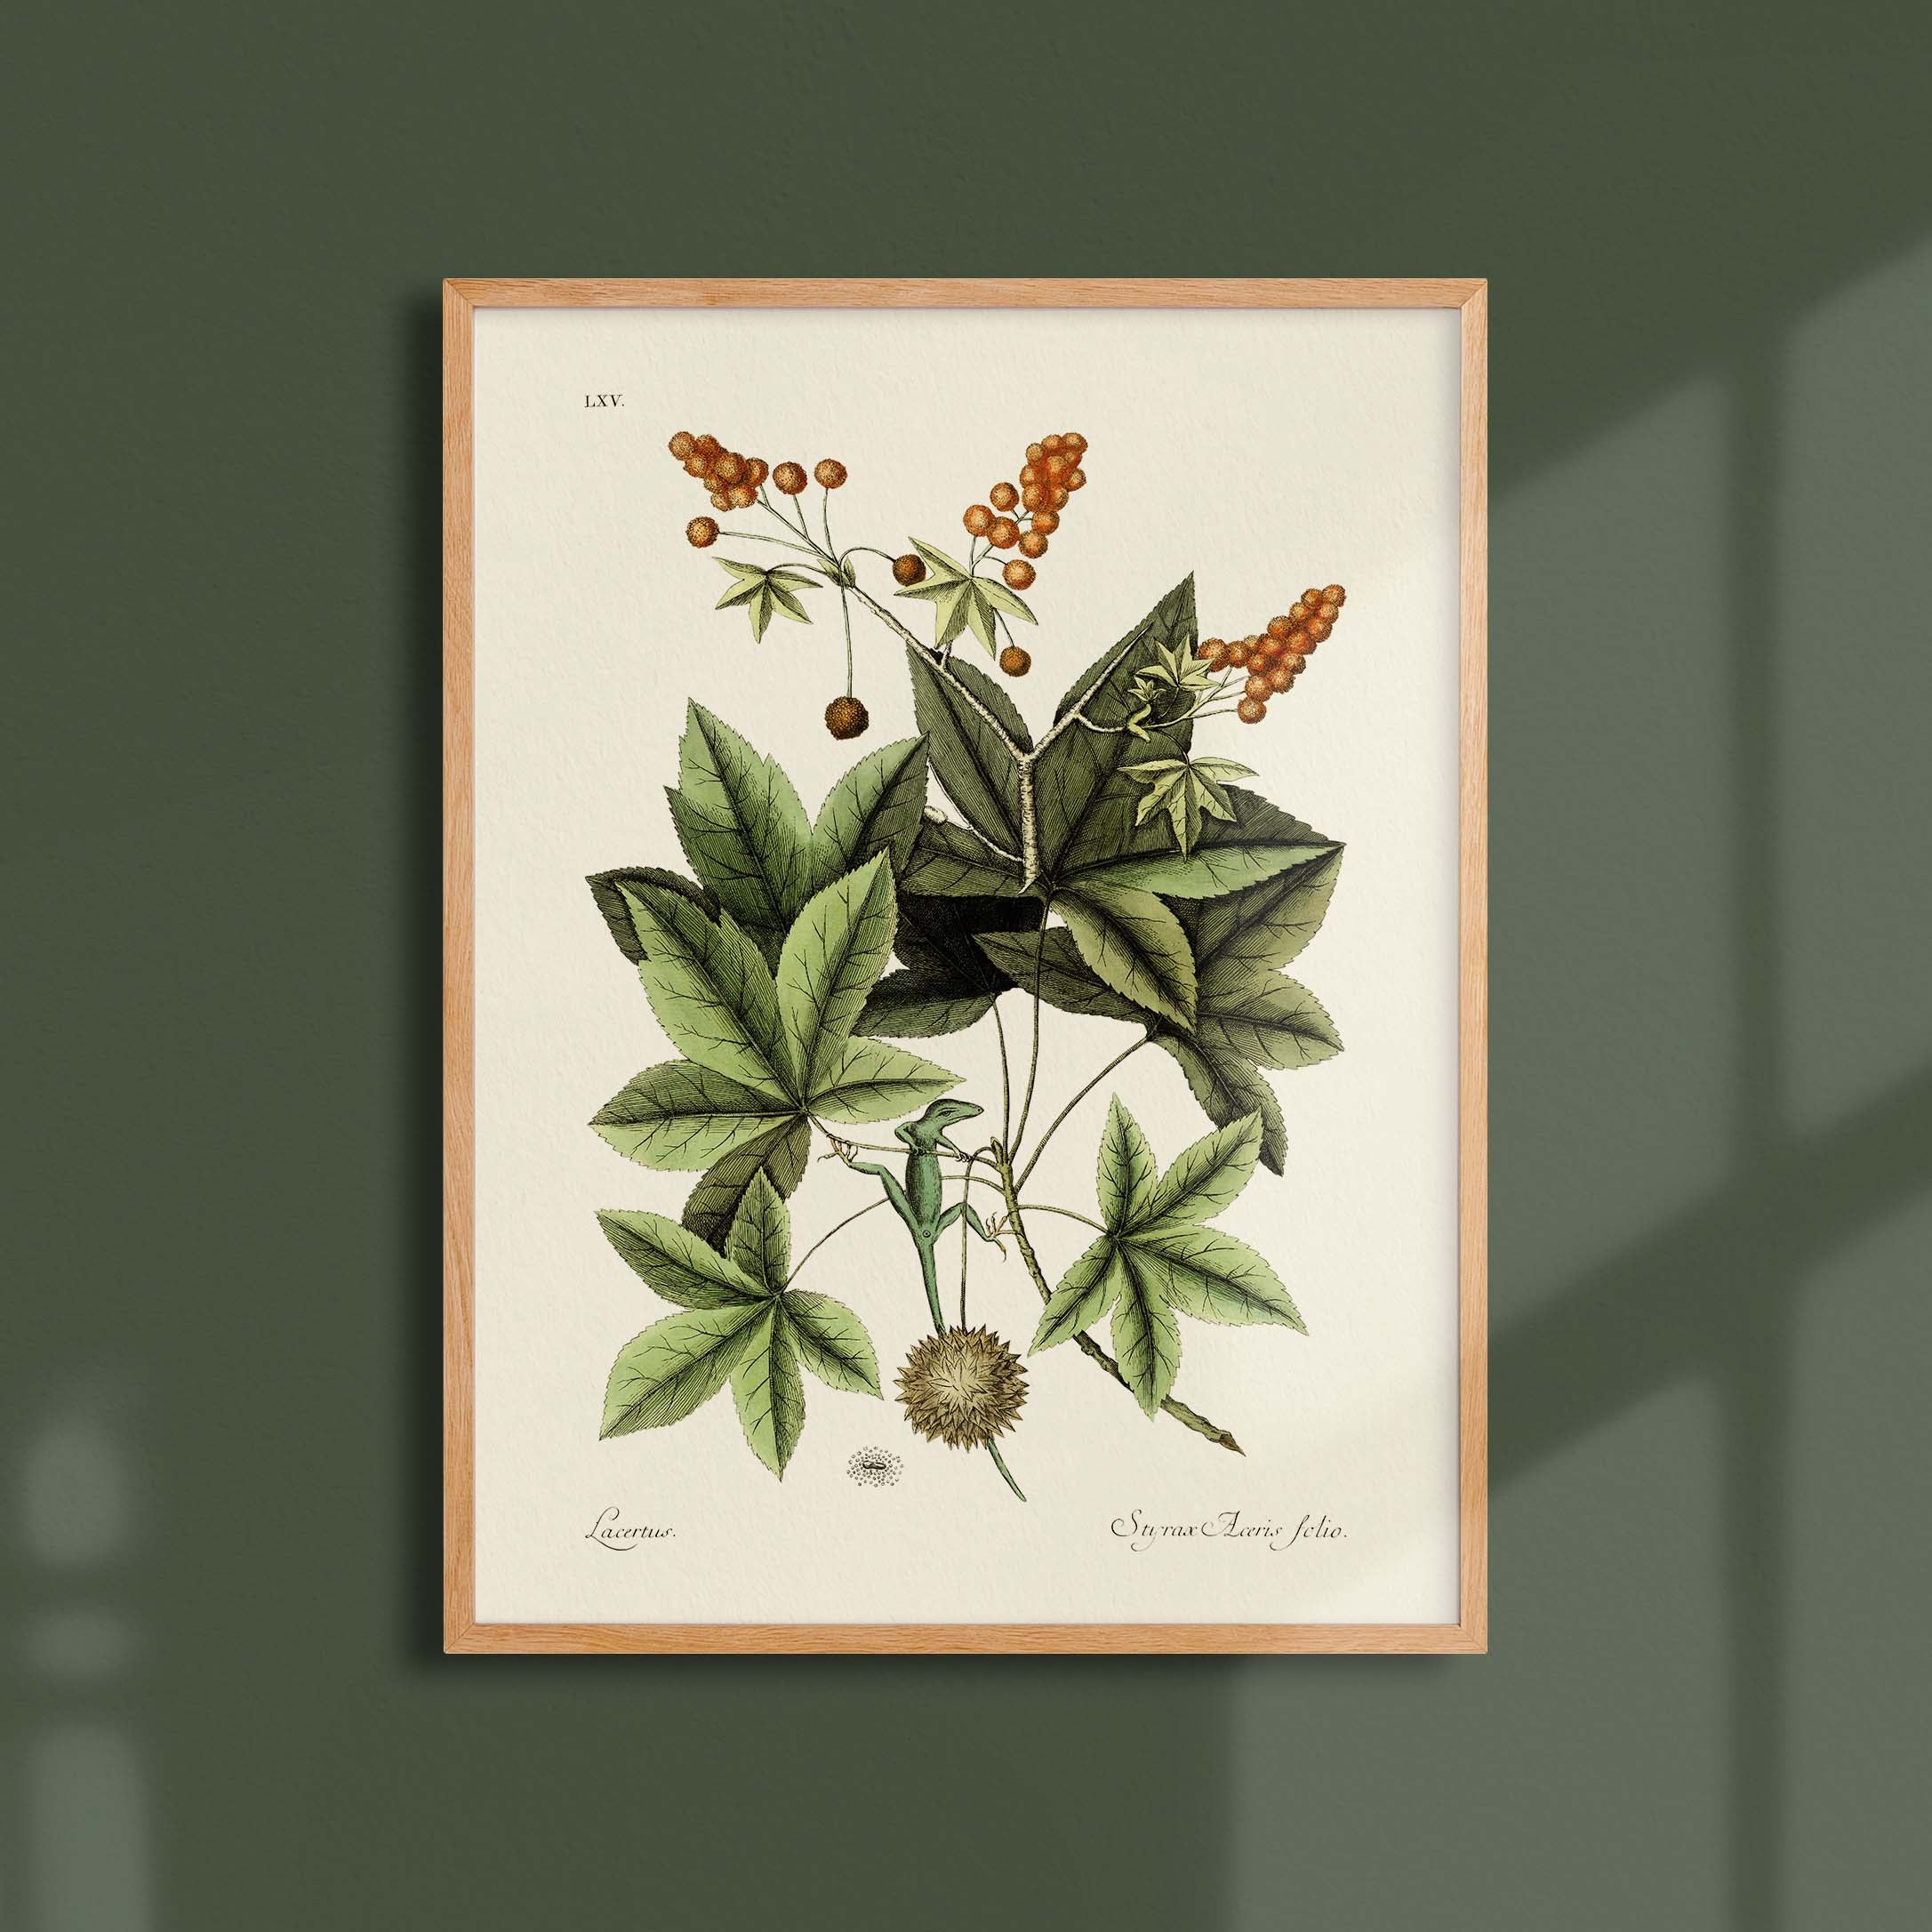 Planche botanique - Lézard vert-oneart.fr